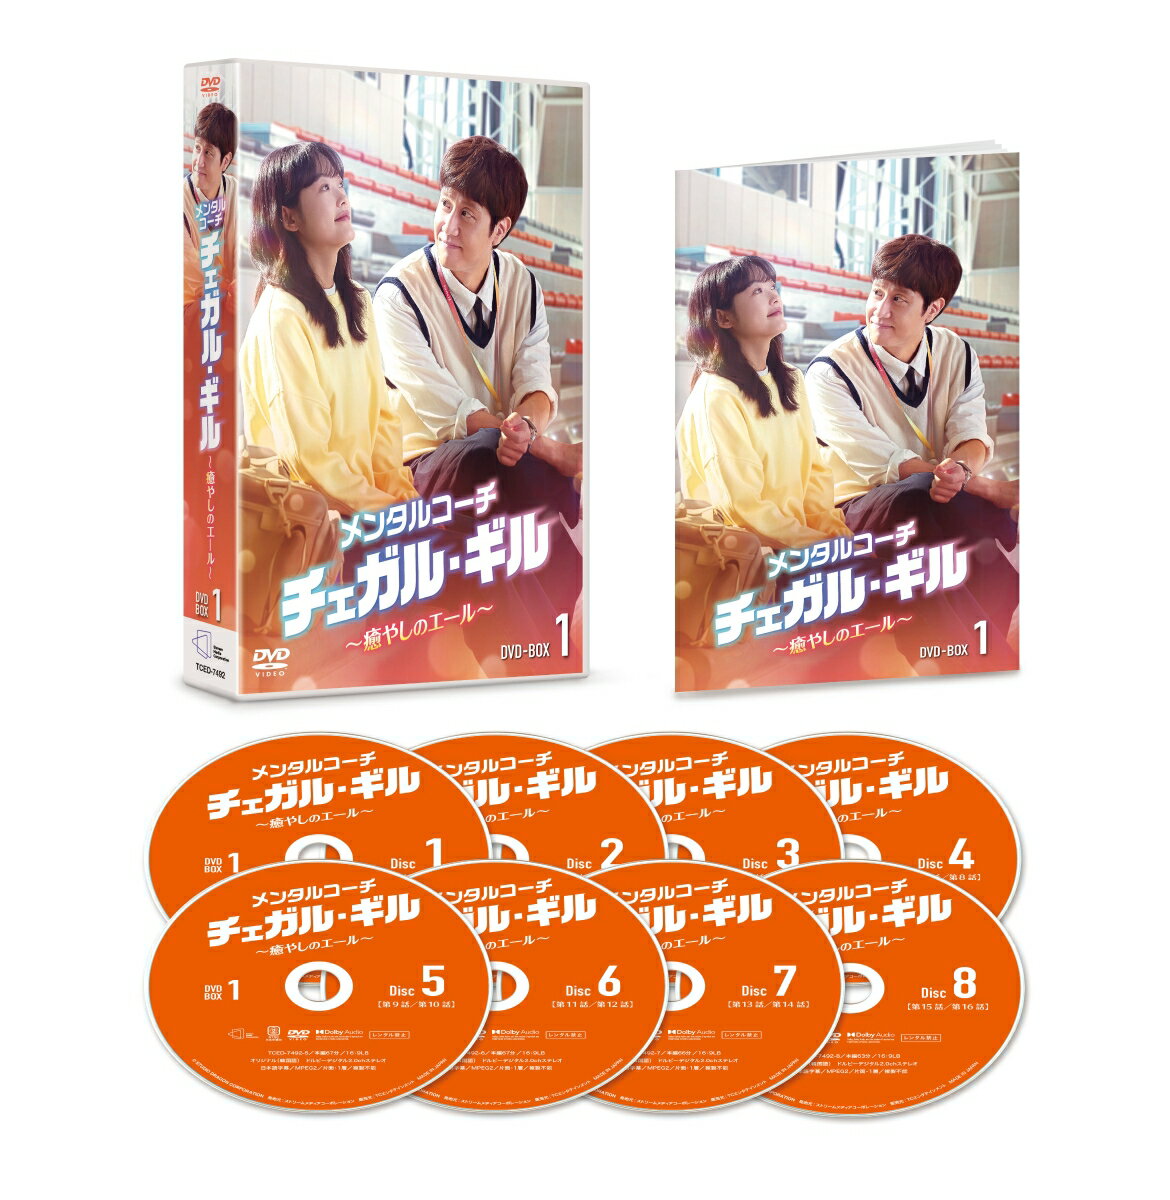 メンタルコーチ チェガル・ギル〜癒やしのエール〜 DVD-BOX1